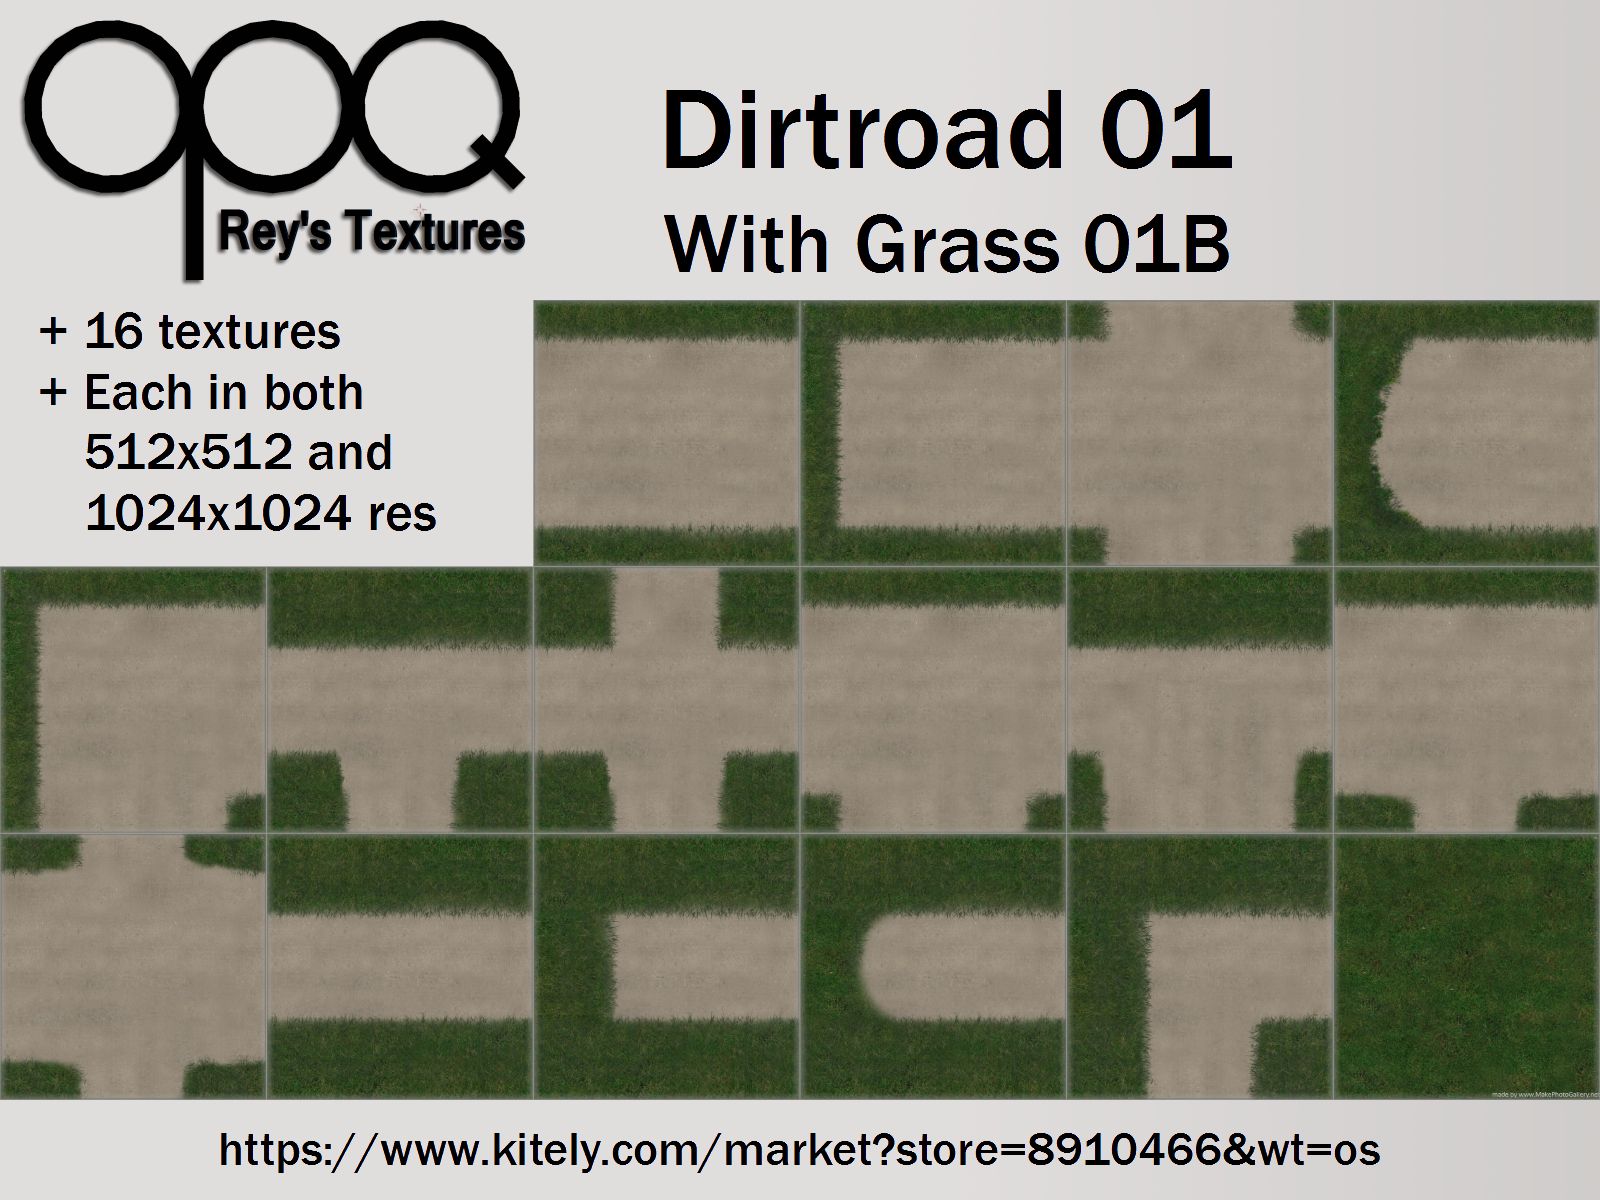 Rey's Dirtroad 01 Grass 01B Poster Kitely.jpg